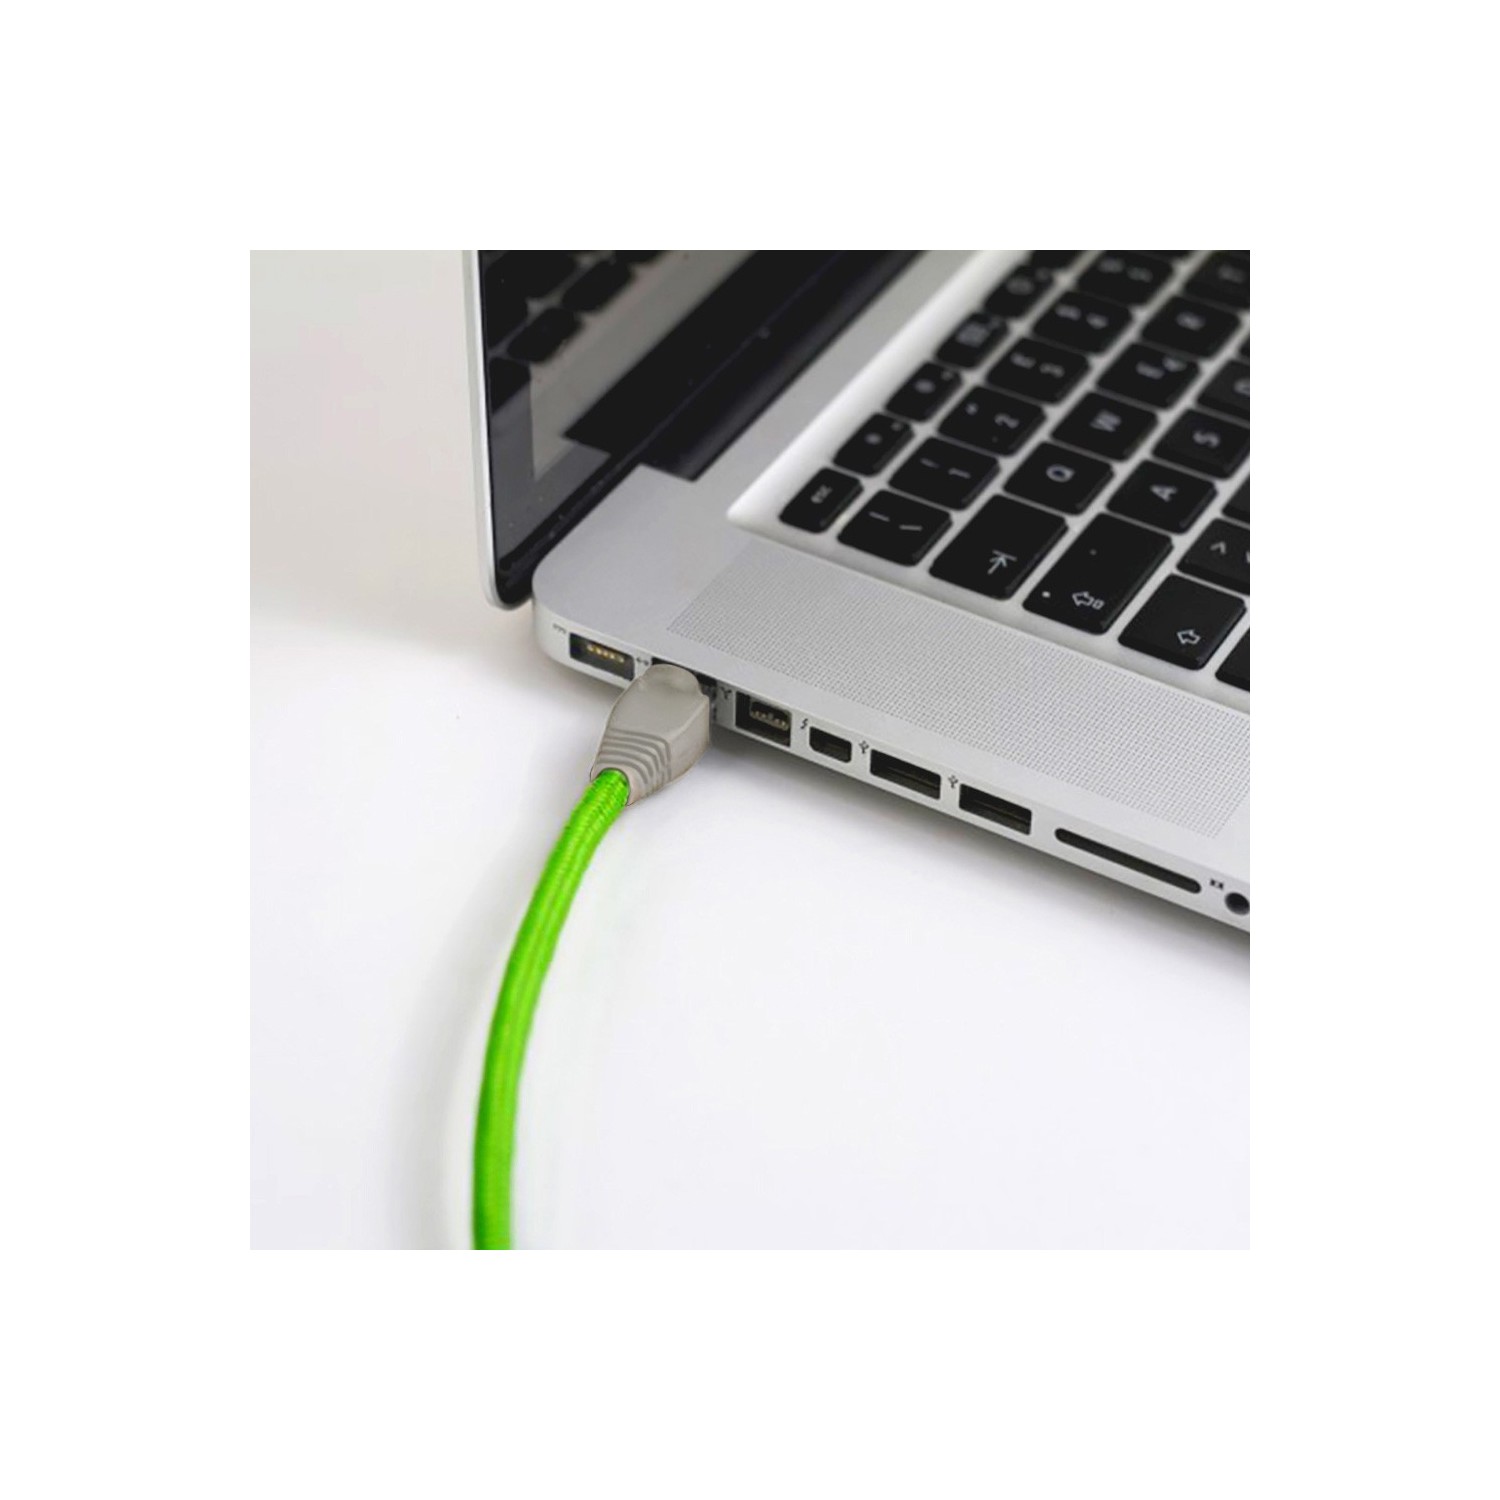 Cable LAN - Ethernet Textil RF06 Verde Fluorescente - Cat 5e - RJ45